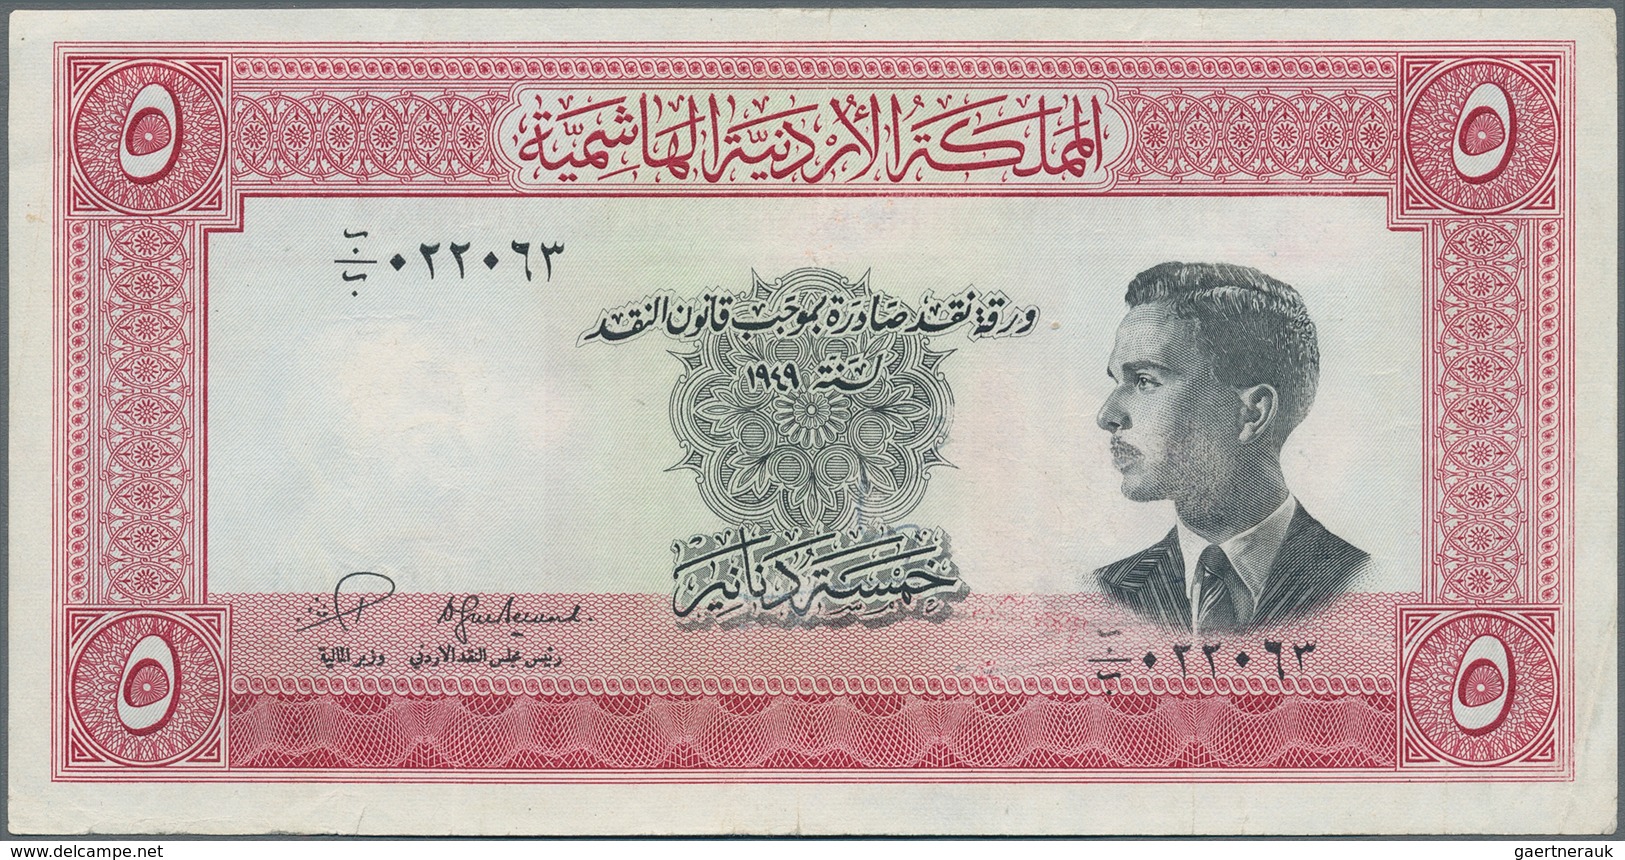 Jordan / Jordanien: 5 Dinars L.1949 (1952), P.7, Still Crisp Paper And Bright Colors With A Few Fold - Jordanien